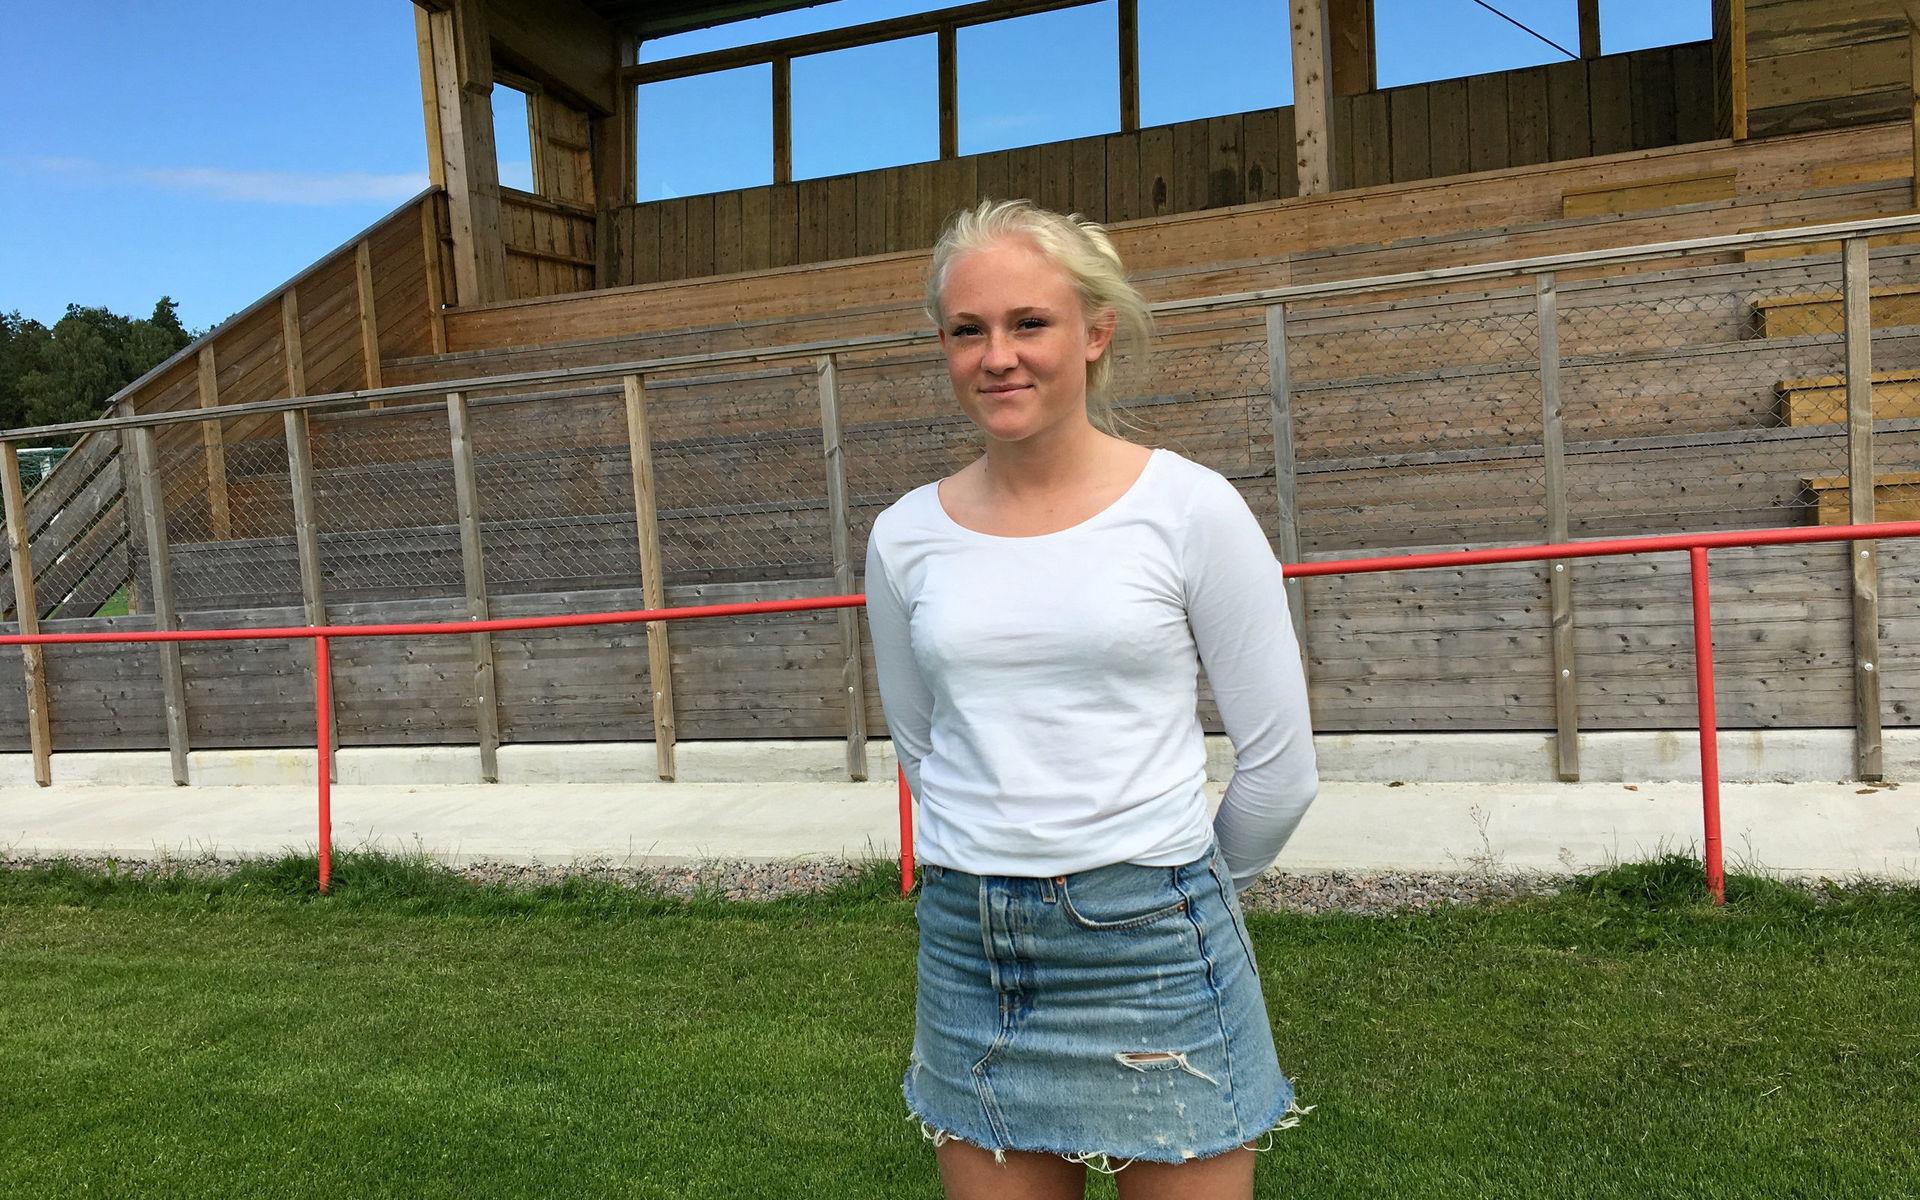 Blir Emilia Bengtsson Årets kvinnliga idrottare?